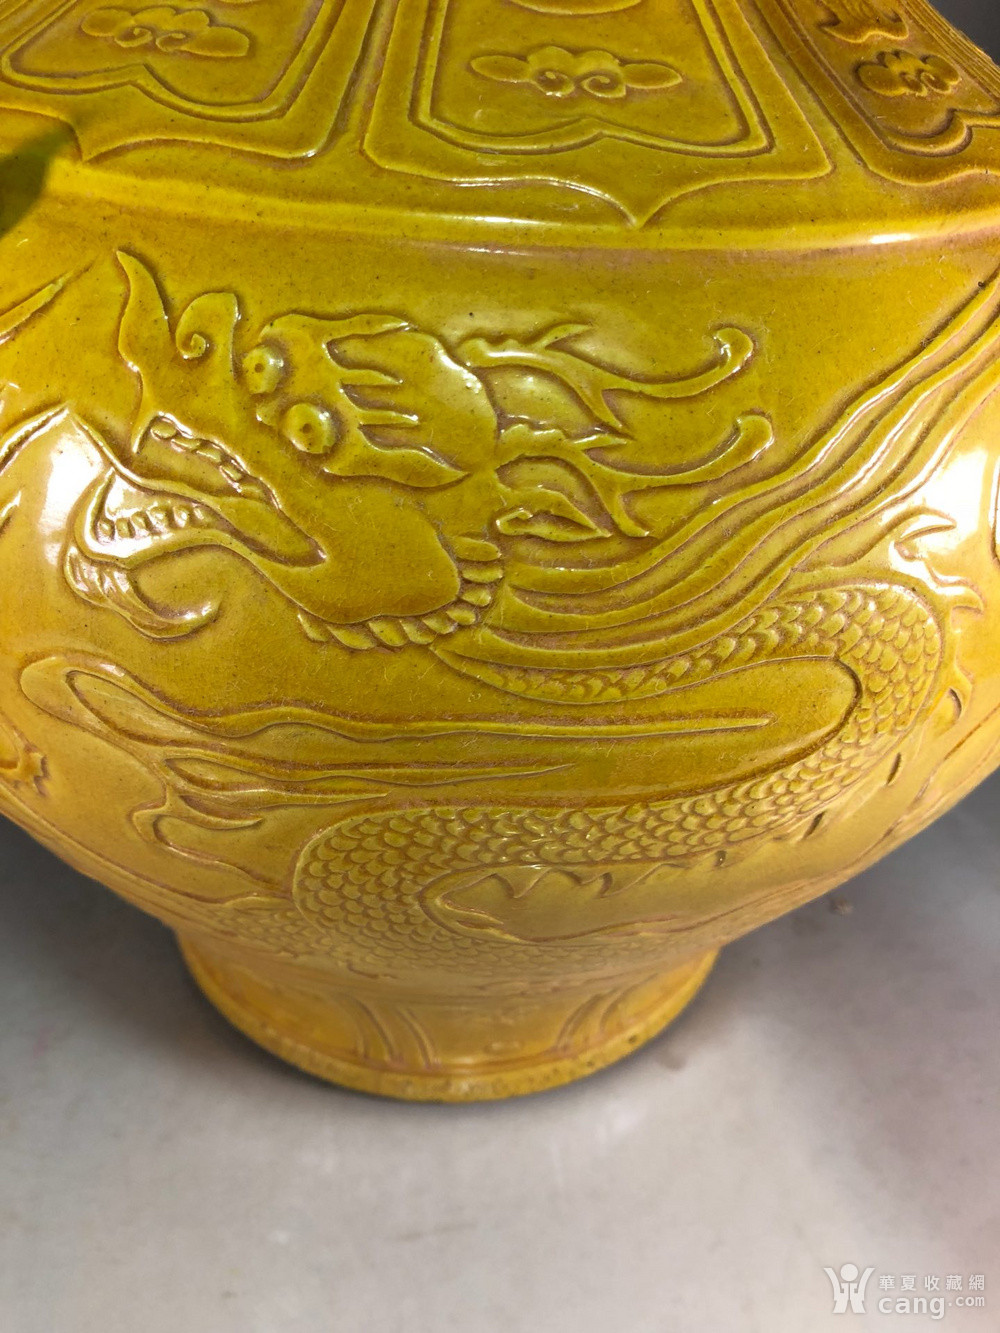 仿古工艺品 瓷器 元代白浒孤窑款黄釉雕刻龙纹兽头罐 报价记录 服务